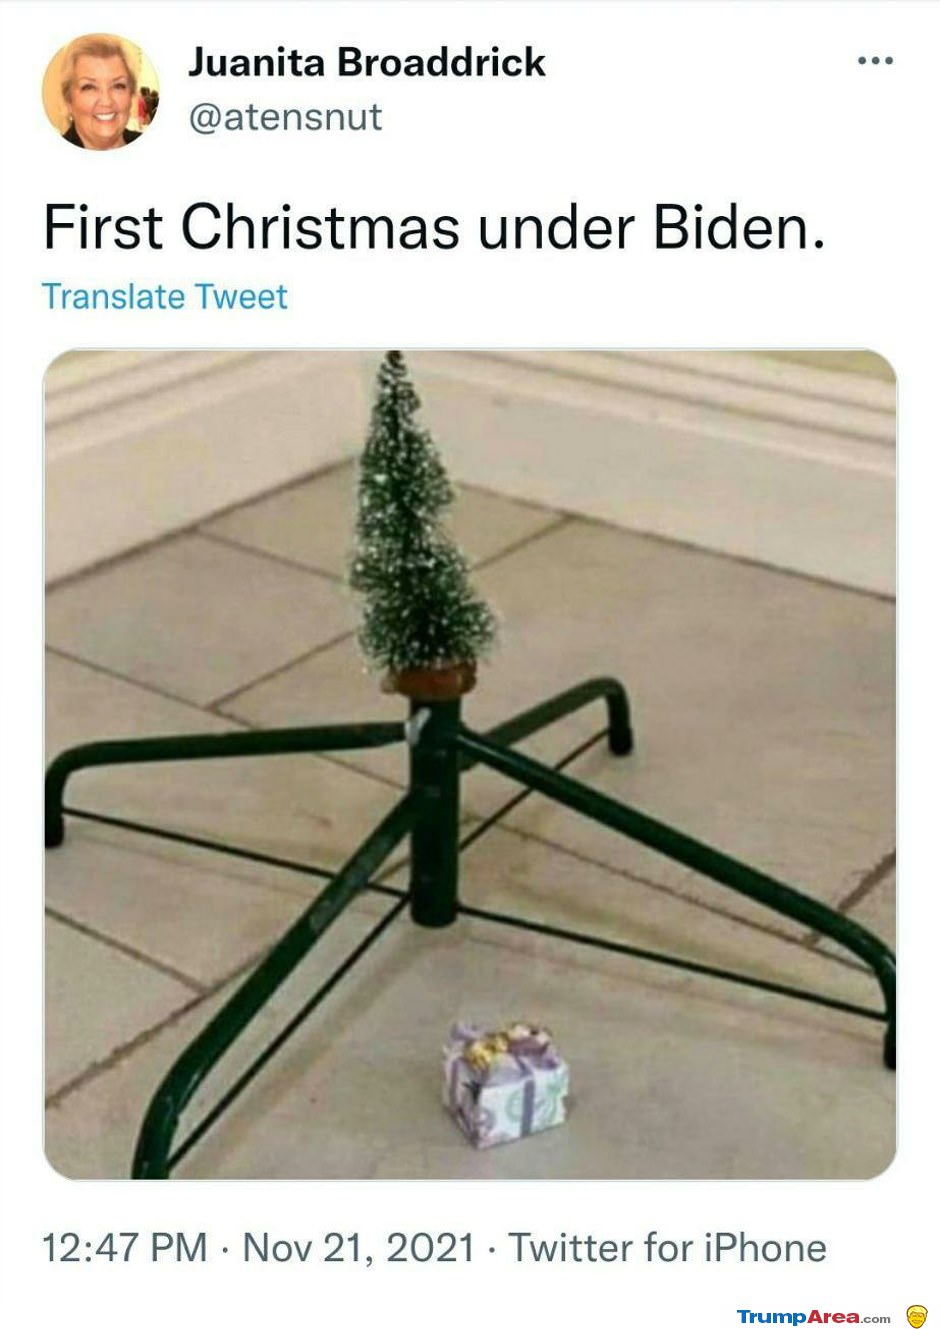 A Biden Christmas